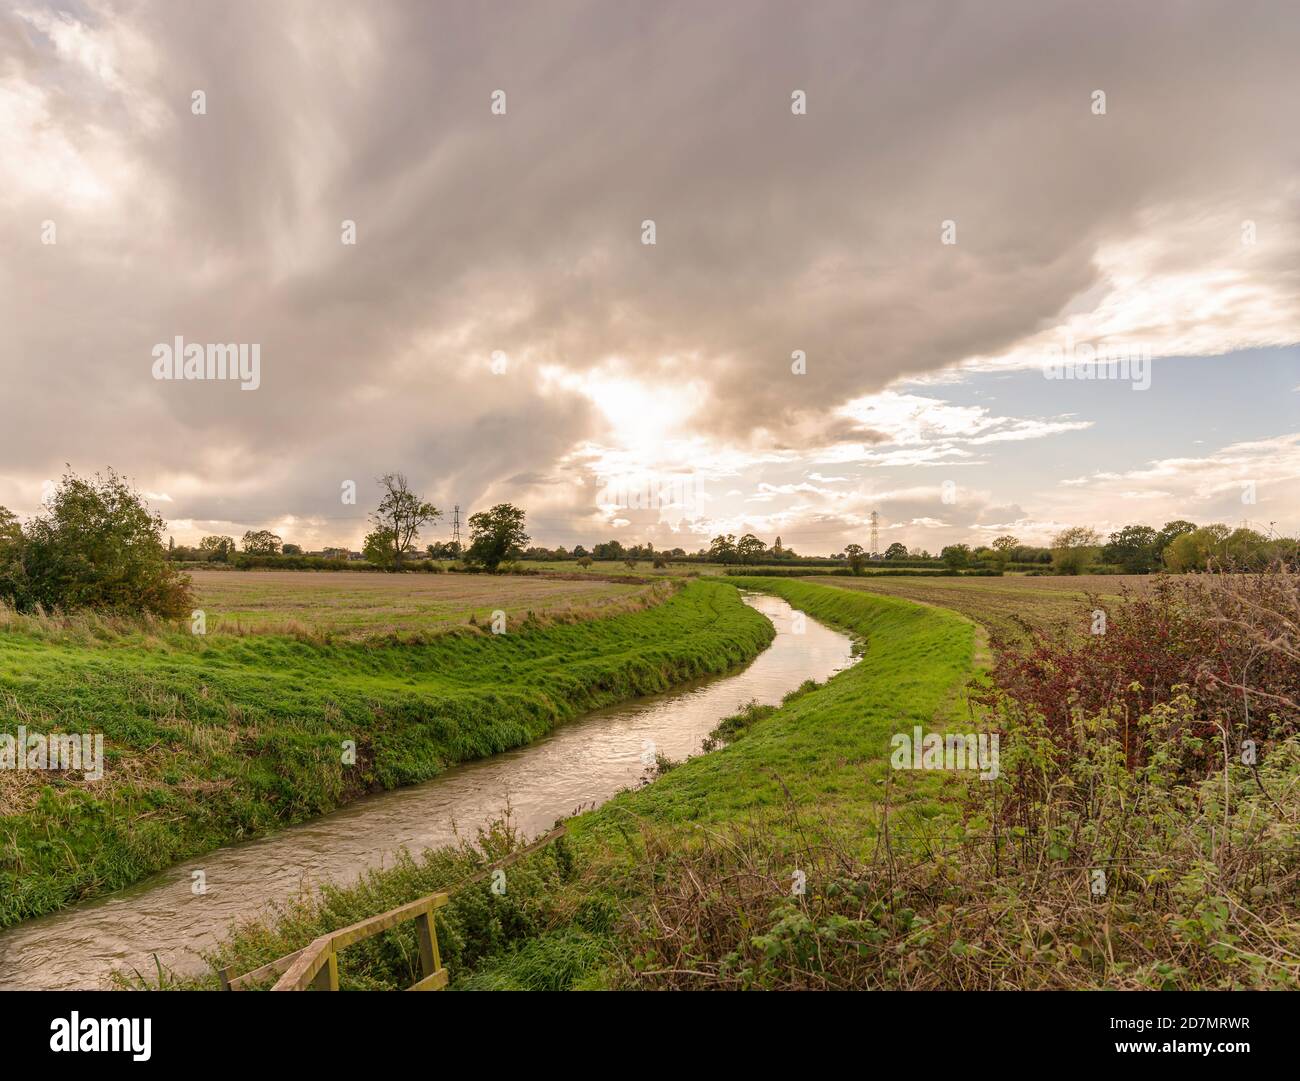 Un piccolo fiume curva tra due campi che sono stati arati dopo il raccolto. I piloni sono all'orizzonte e una nuvola pesante è in testa. Foto Stock